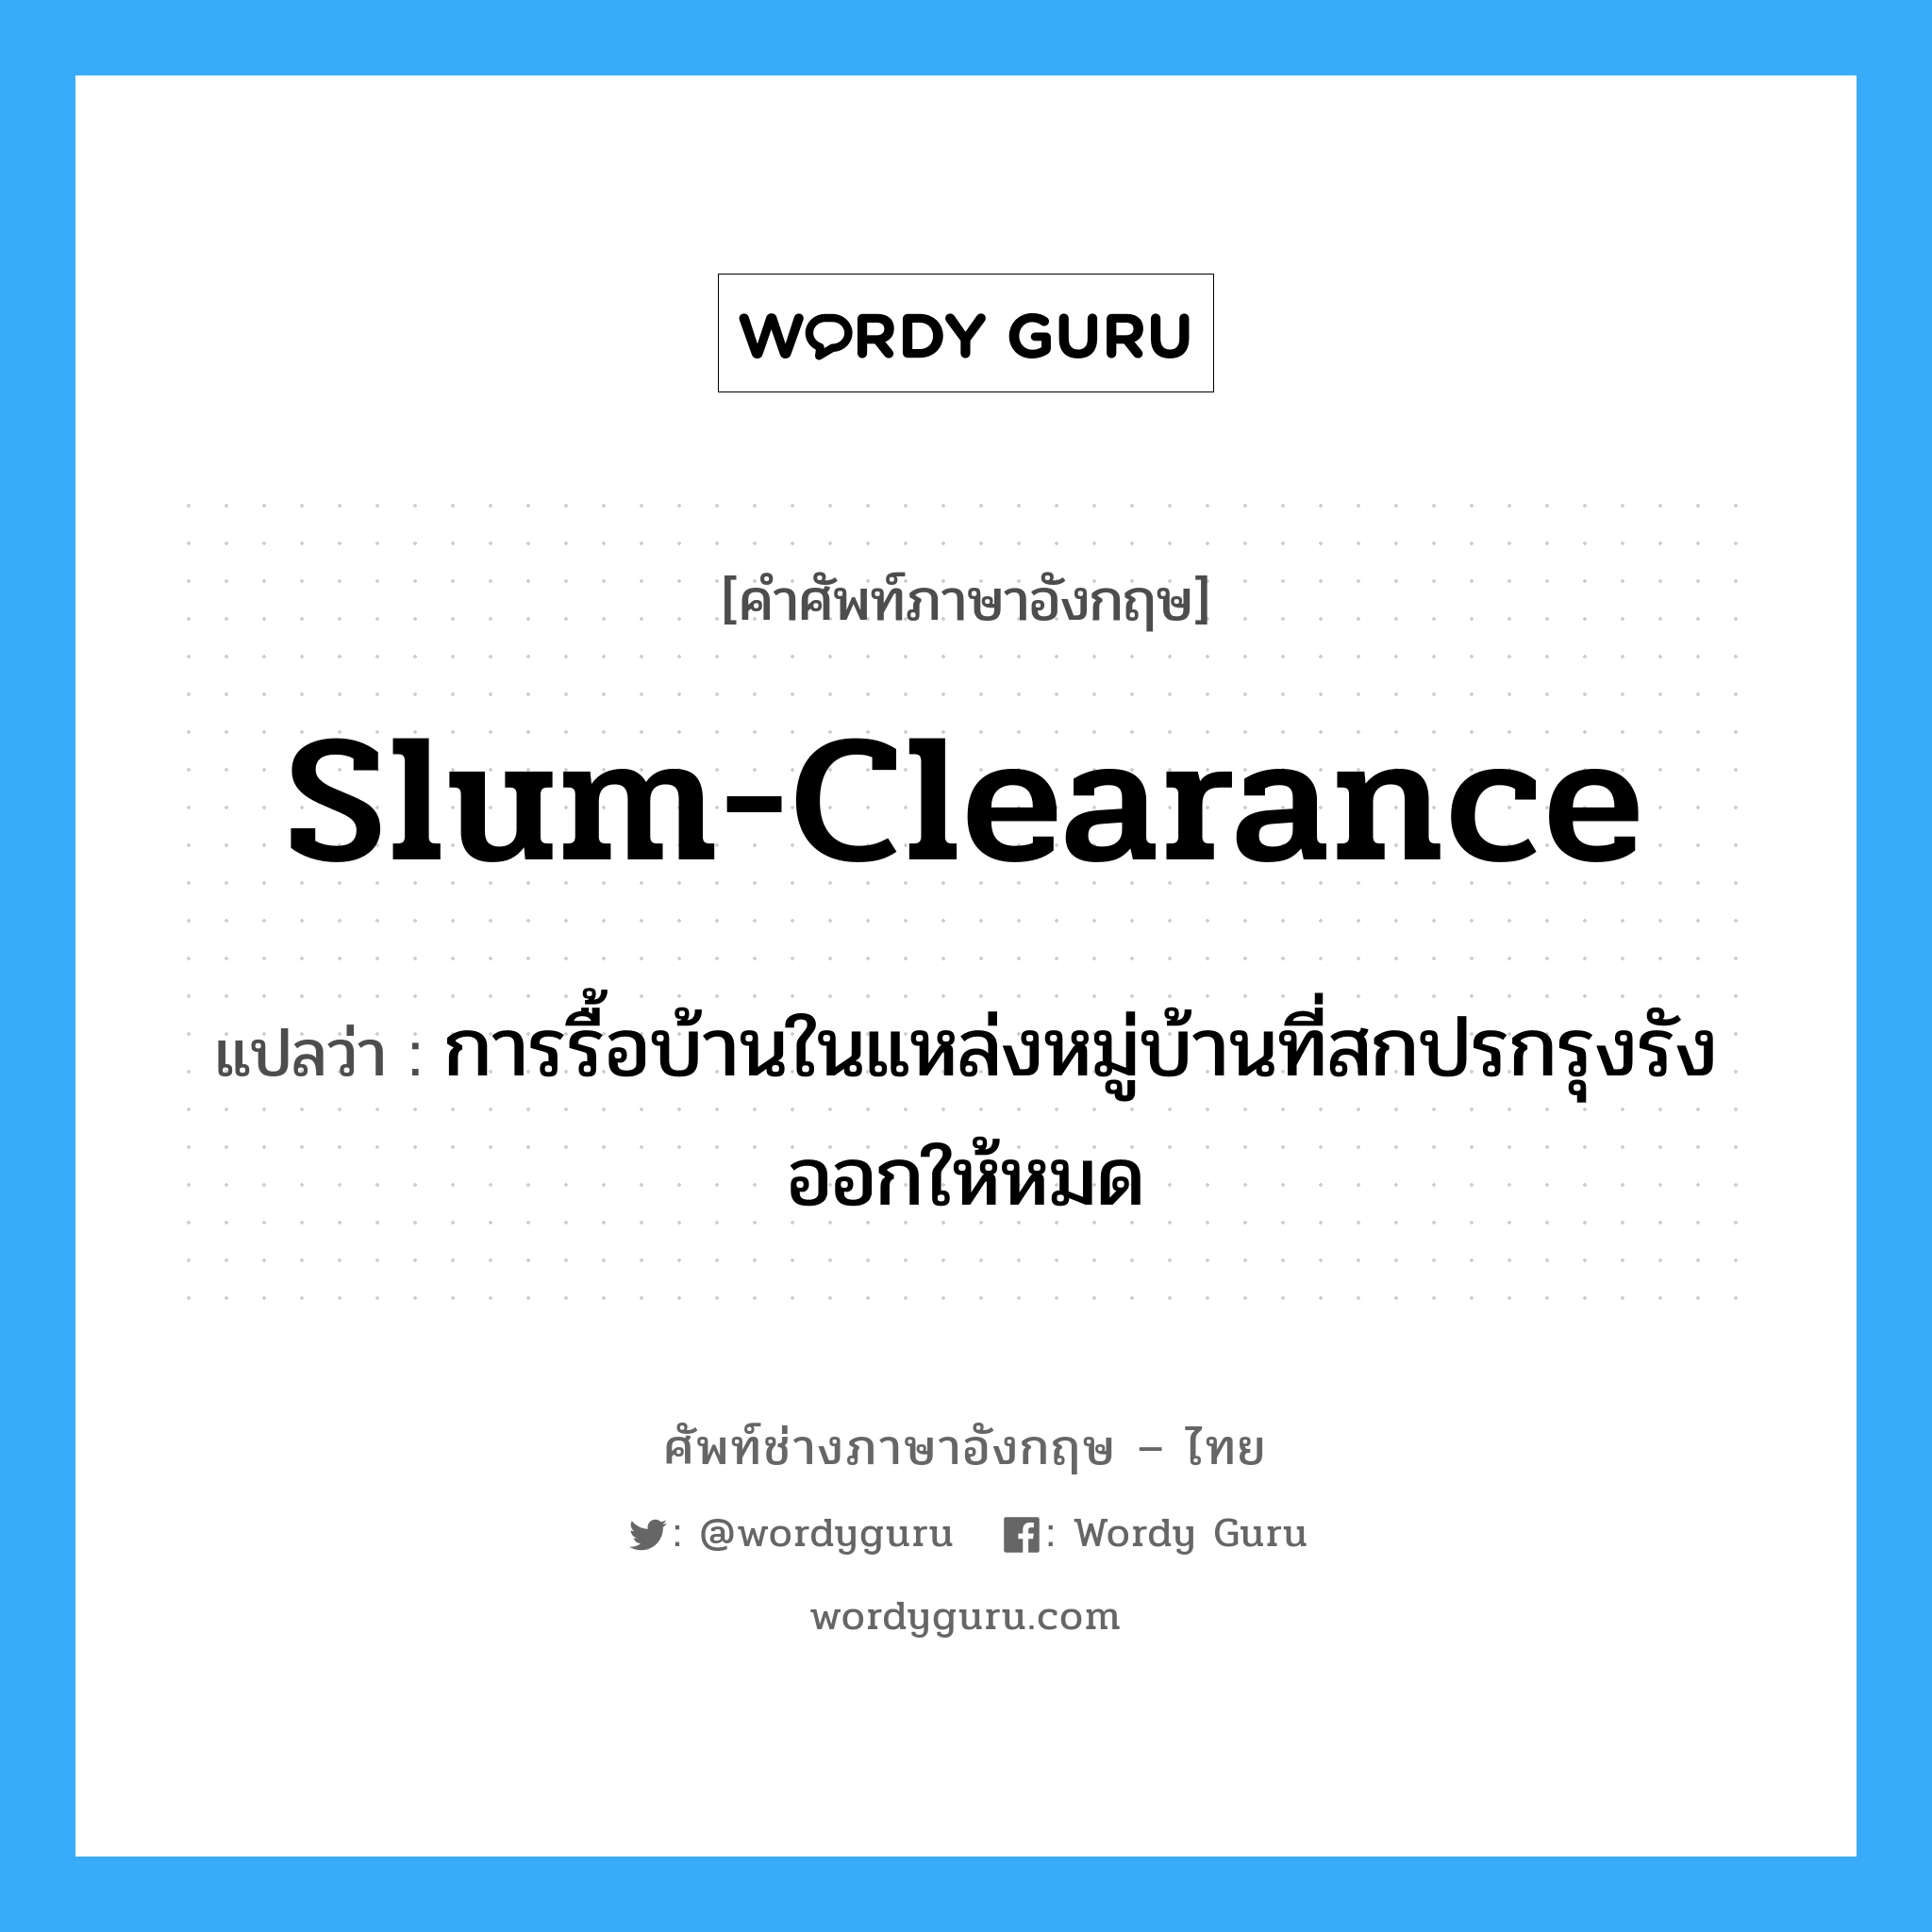 slum-clearance แปลว่า?, คำศัพท์ช่างภาษาอังกฤษ - ไทย slum-clearance คำศัพท์ภาษาอังกฤษ slum-clearance แปลว่า การรื้อบ้านในแหล่งหมู่บ้านที่สกปรกรุงรังออกให้หมด